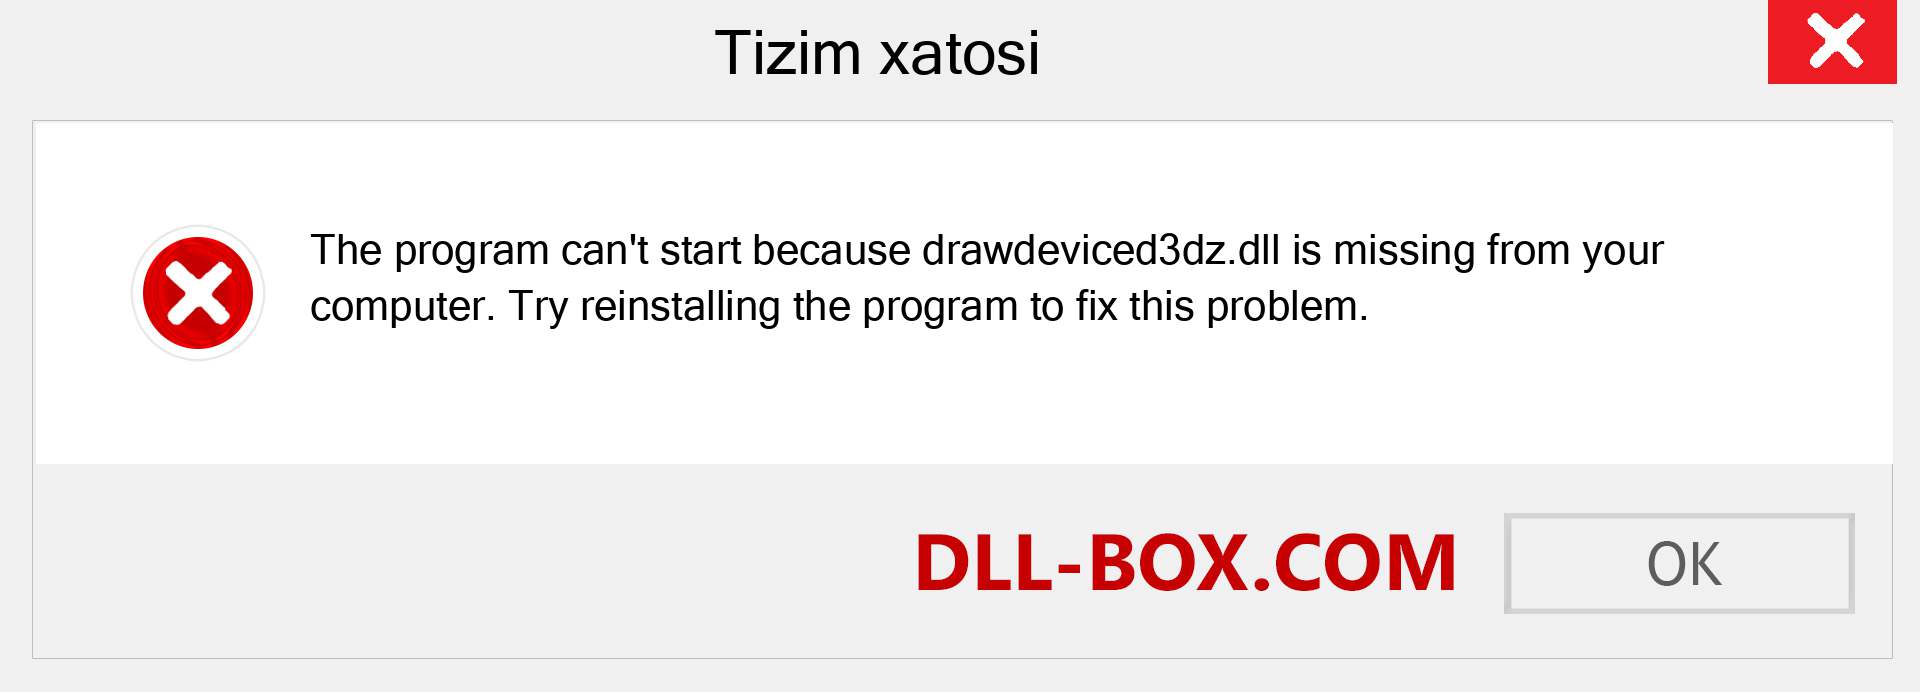 drawdeviced3dz.dll fayli yo'qolganmi?. Windows 7, 8, 10 uchun yuklab olish - Windowsda drawdeviced3dz dll etishmayotgan xatoni tuzating, rasmlar, rasmlar